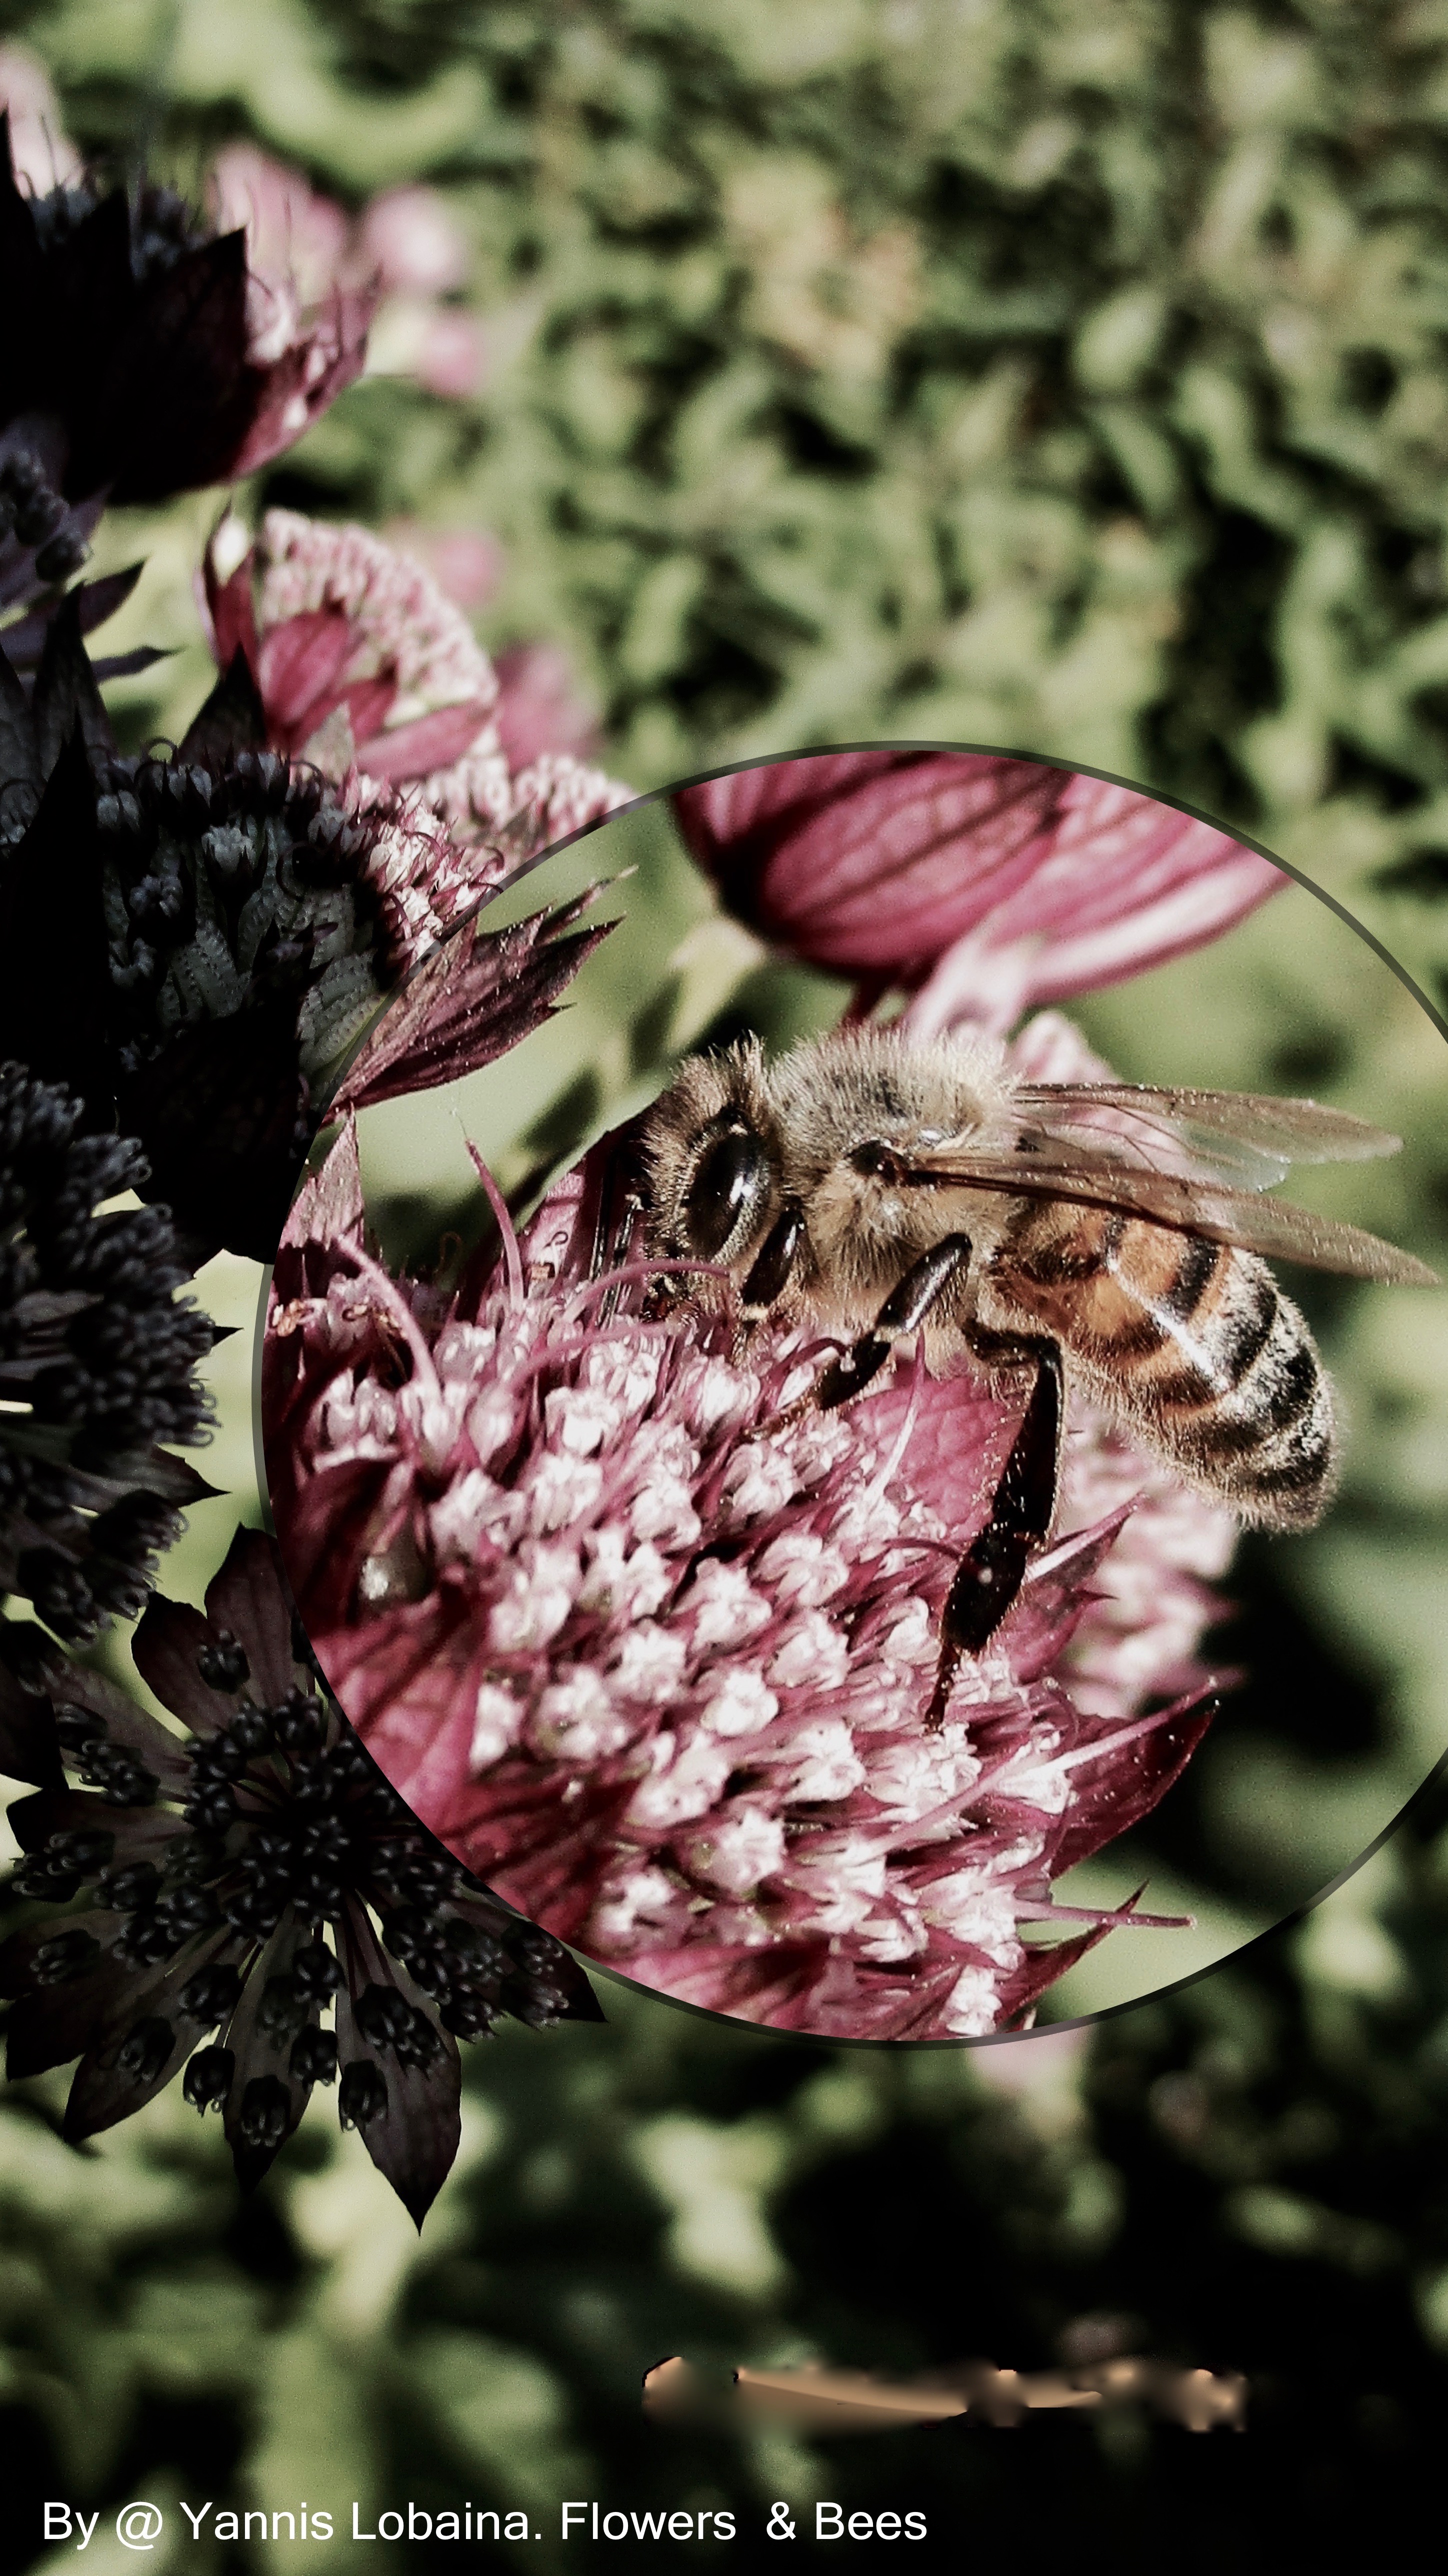 Flower &amp; Bees